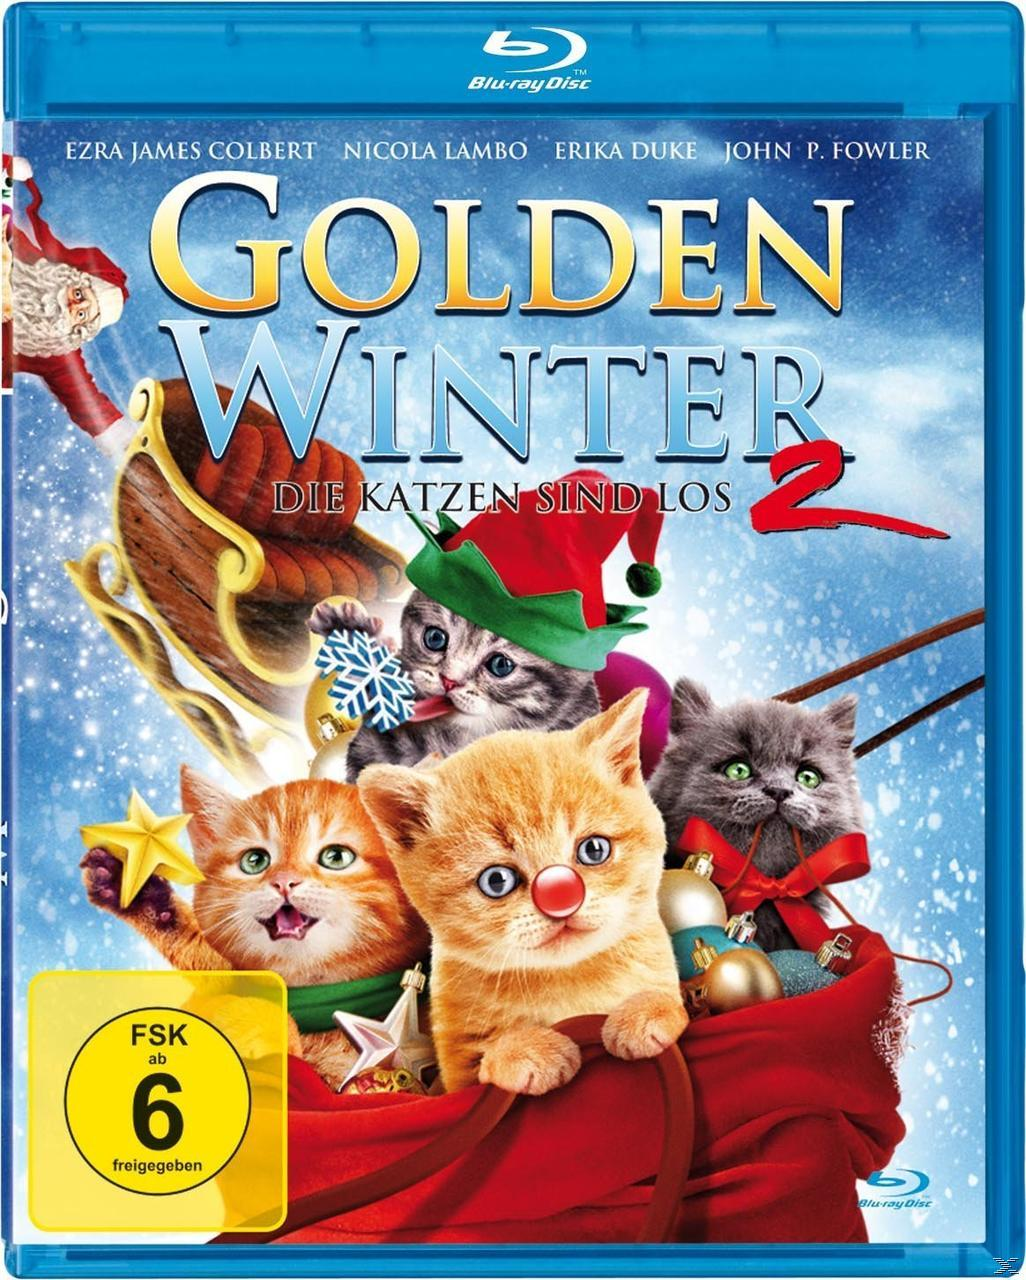 Katzen Blu-ray - Die 2 los Golden Winter sind